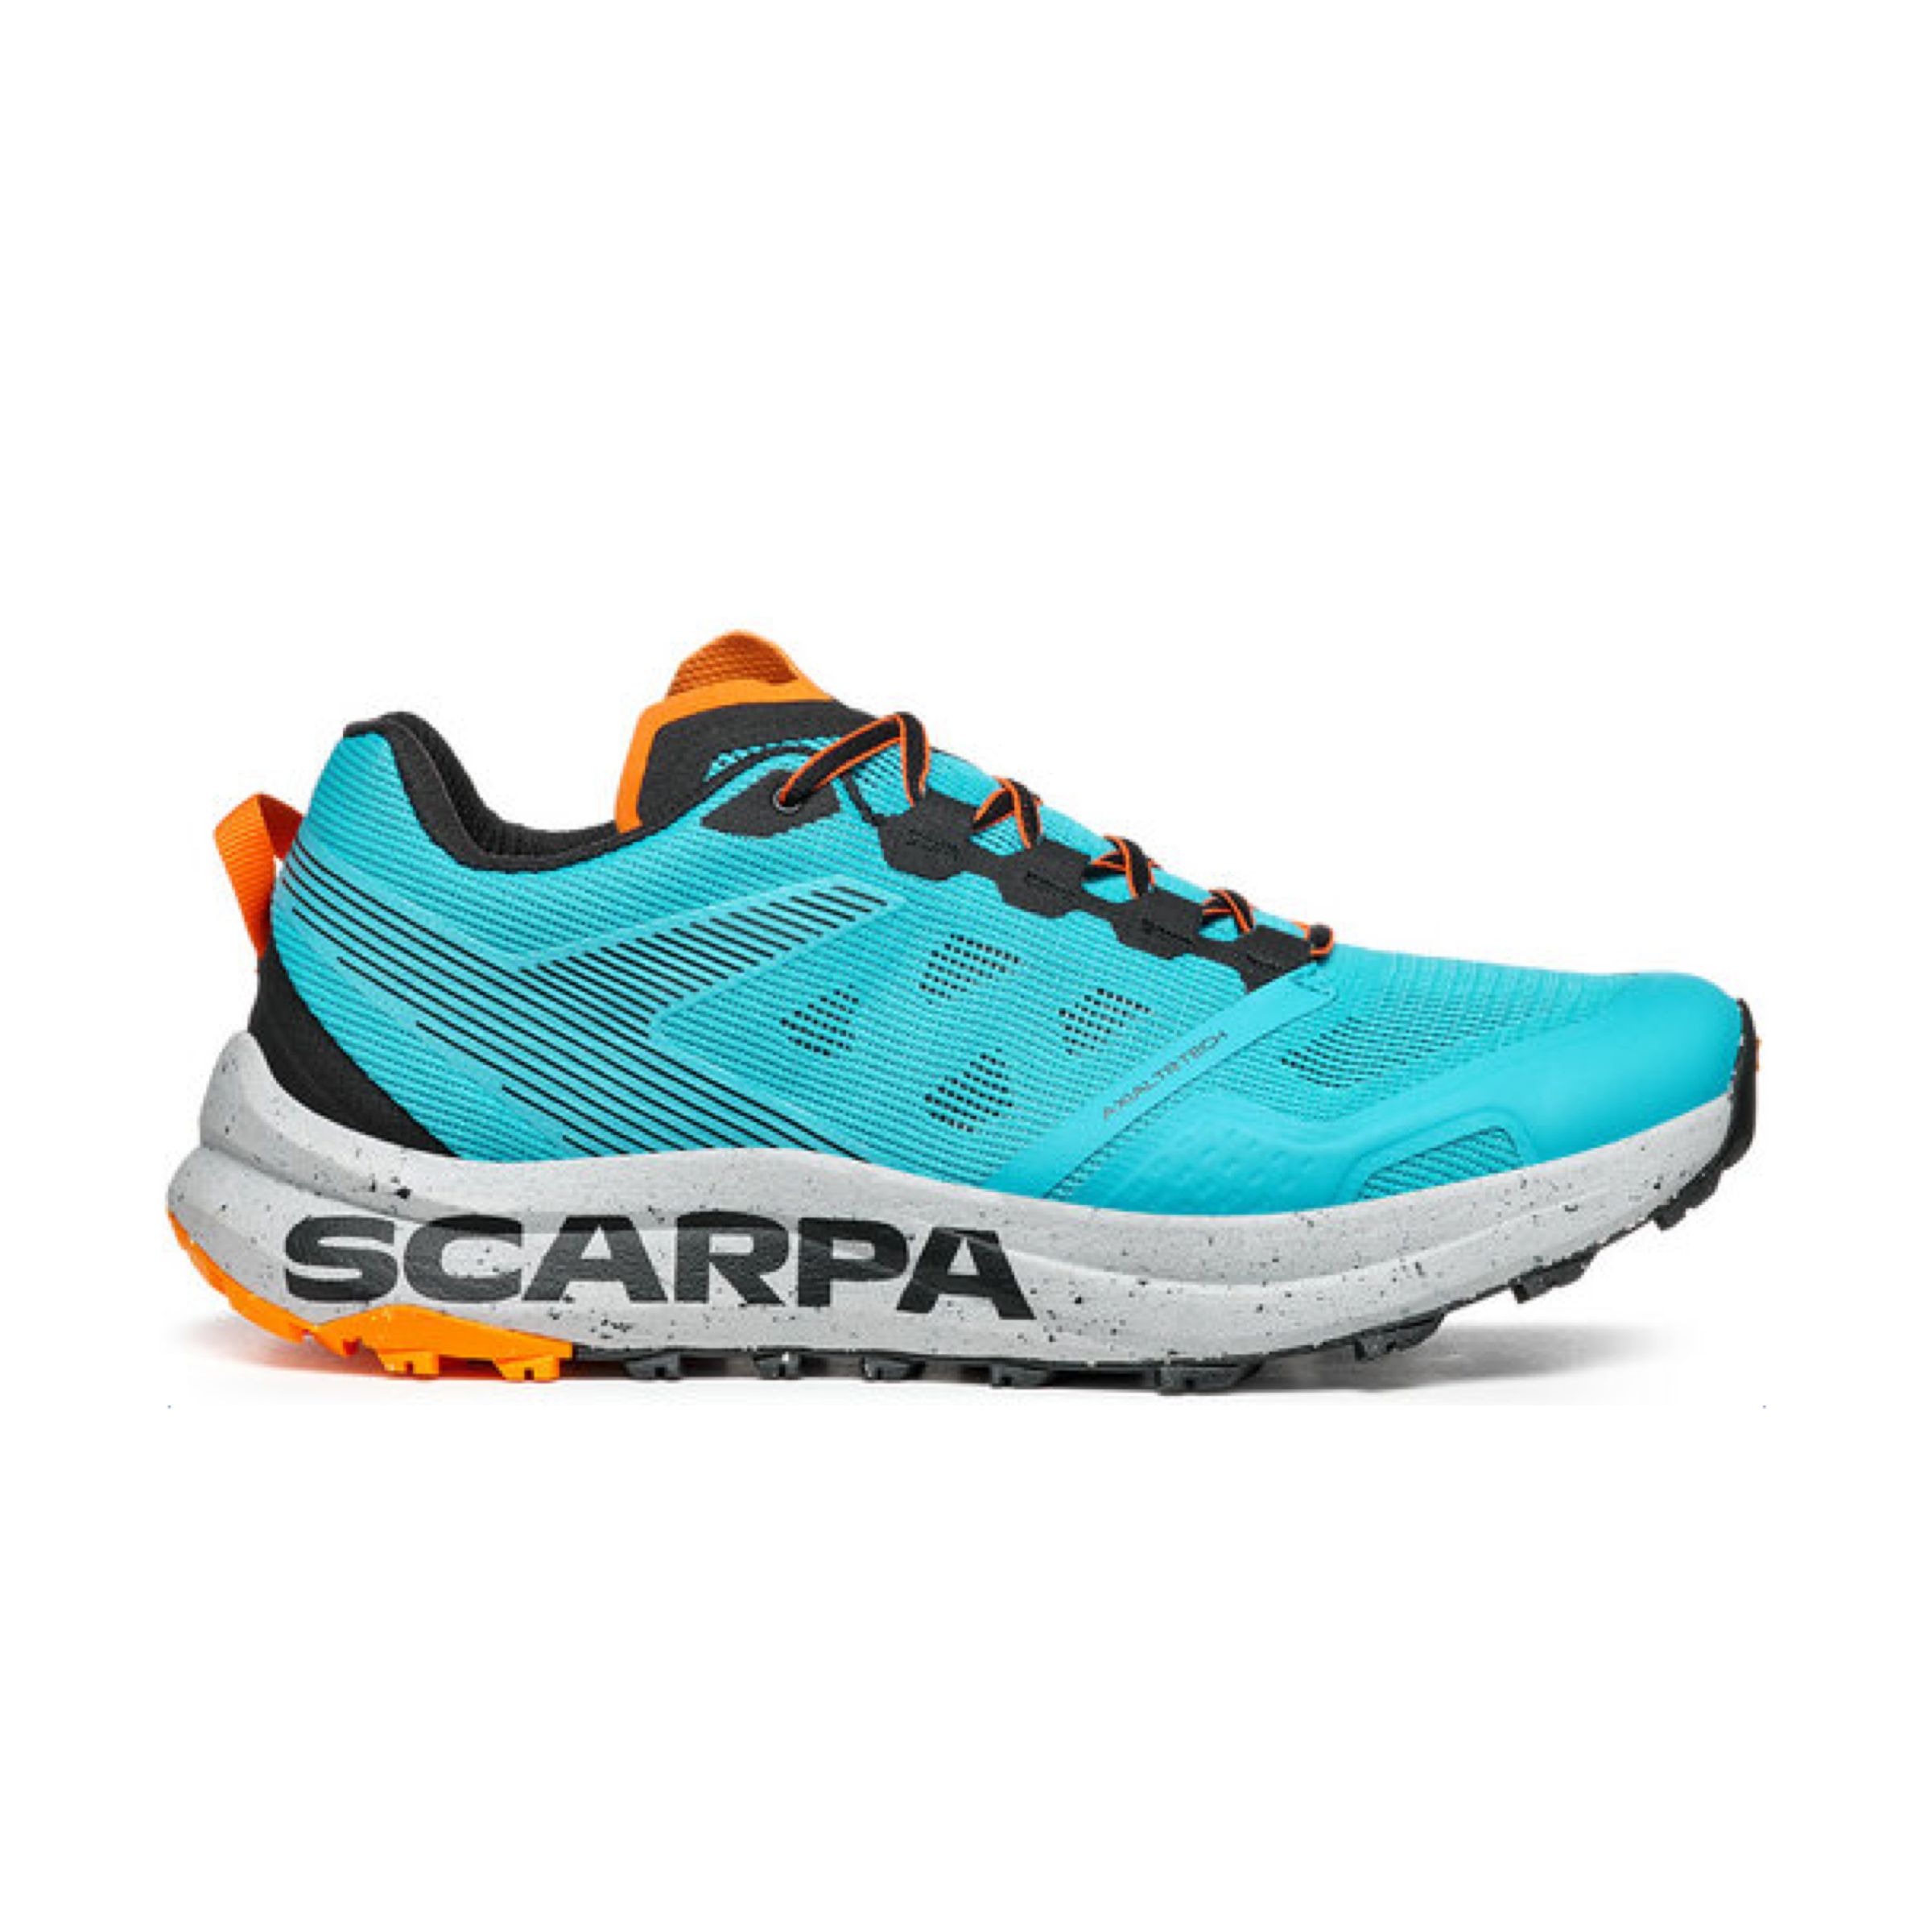 SCARPA Scarpe Spin Plan Uomo Azure/black